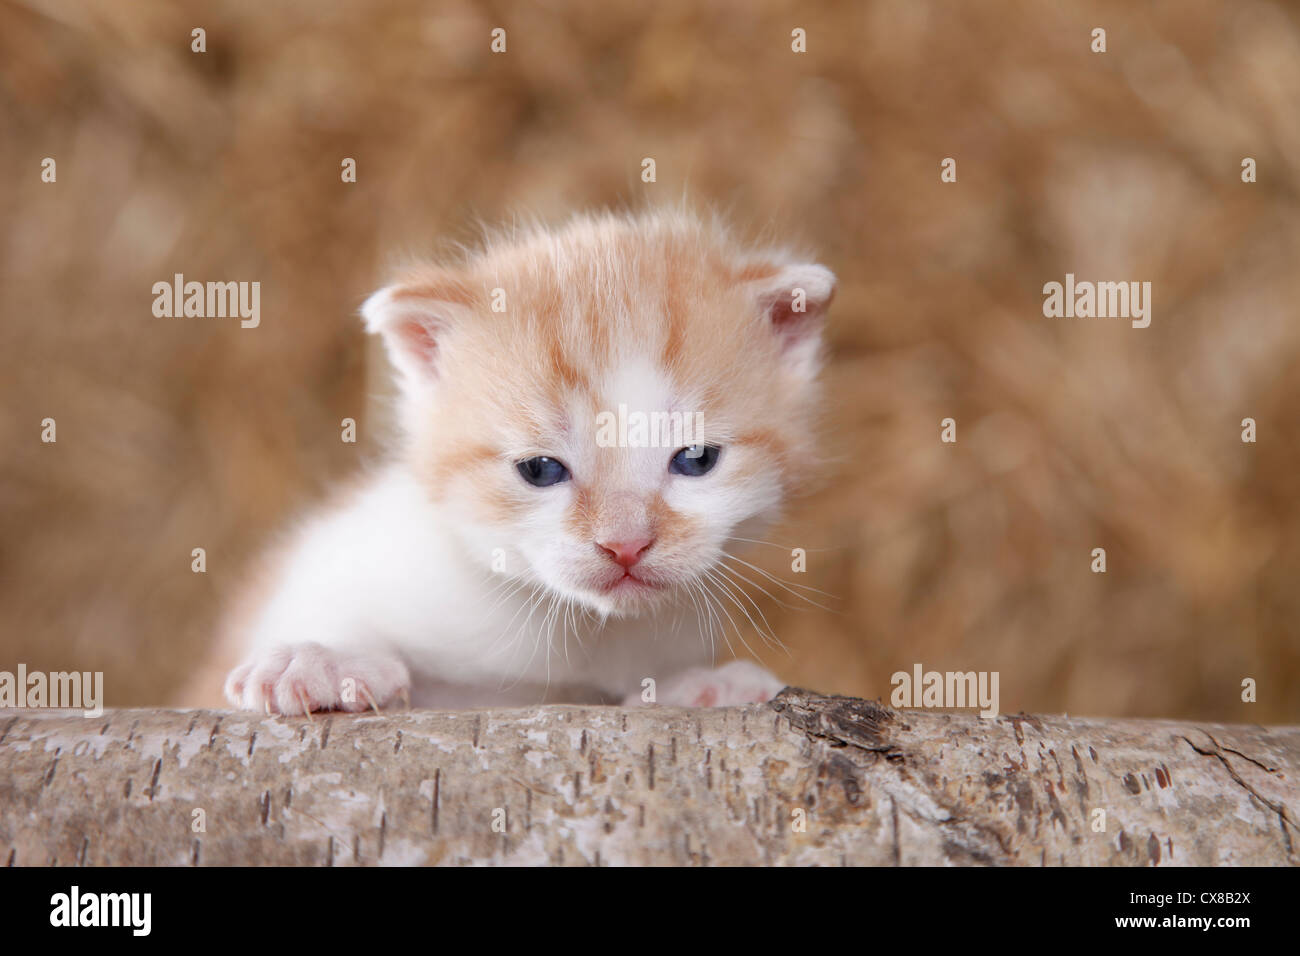 newborn kitten Stock Photo